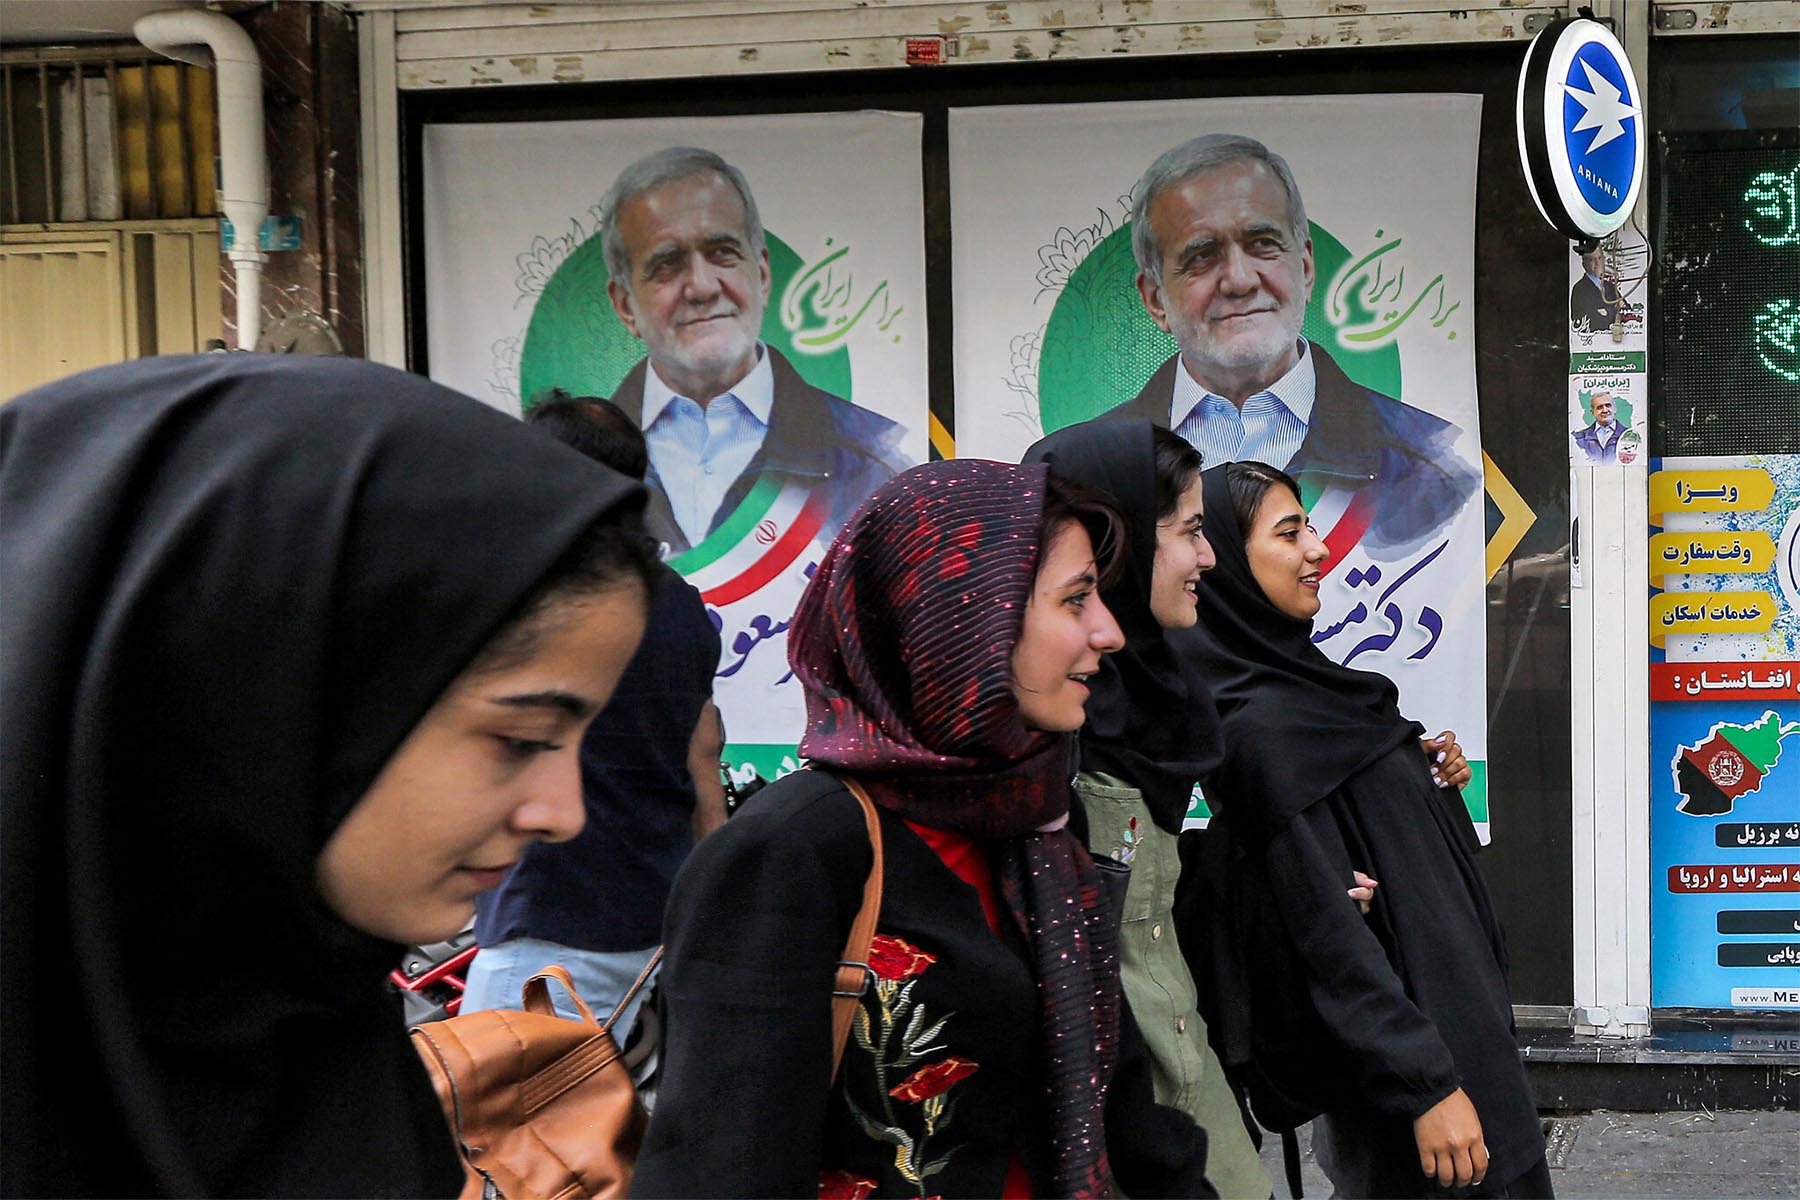 دو نامزد تندرو انتخابات ریاست جمهوری ایران یک روز قبل از رای گیری کناره گیری کردند